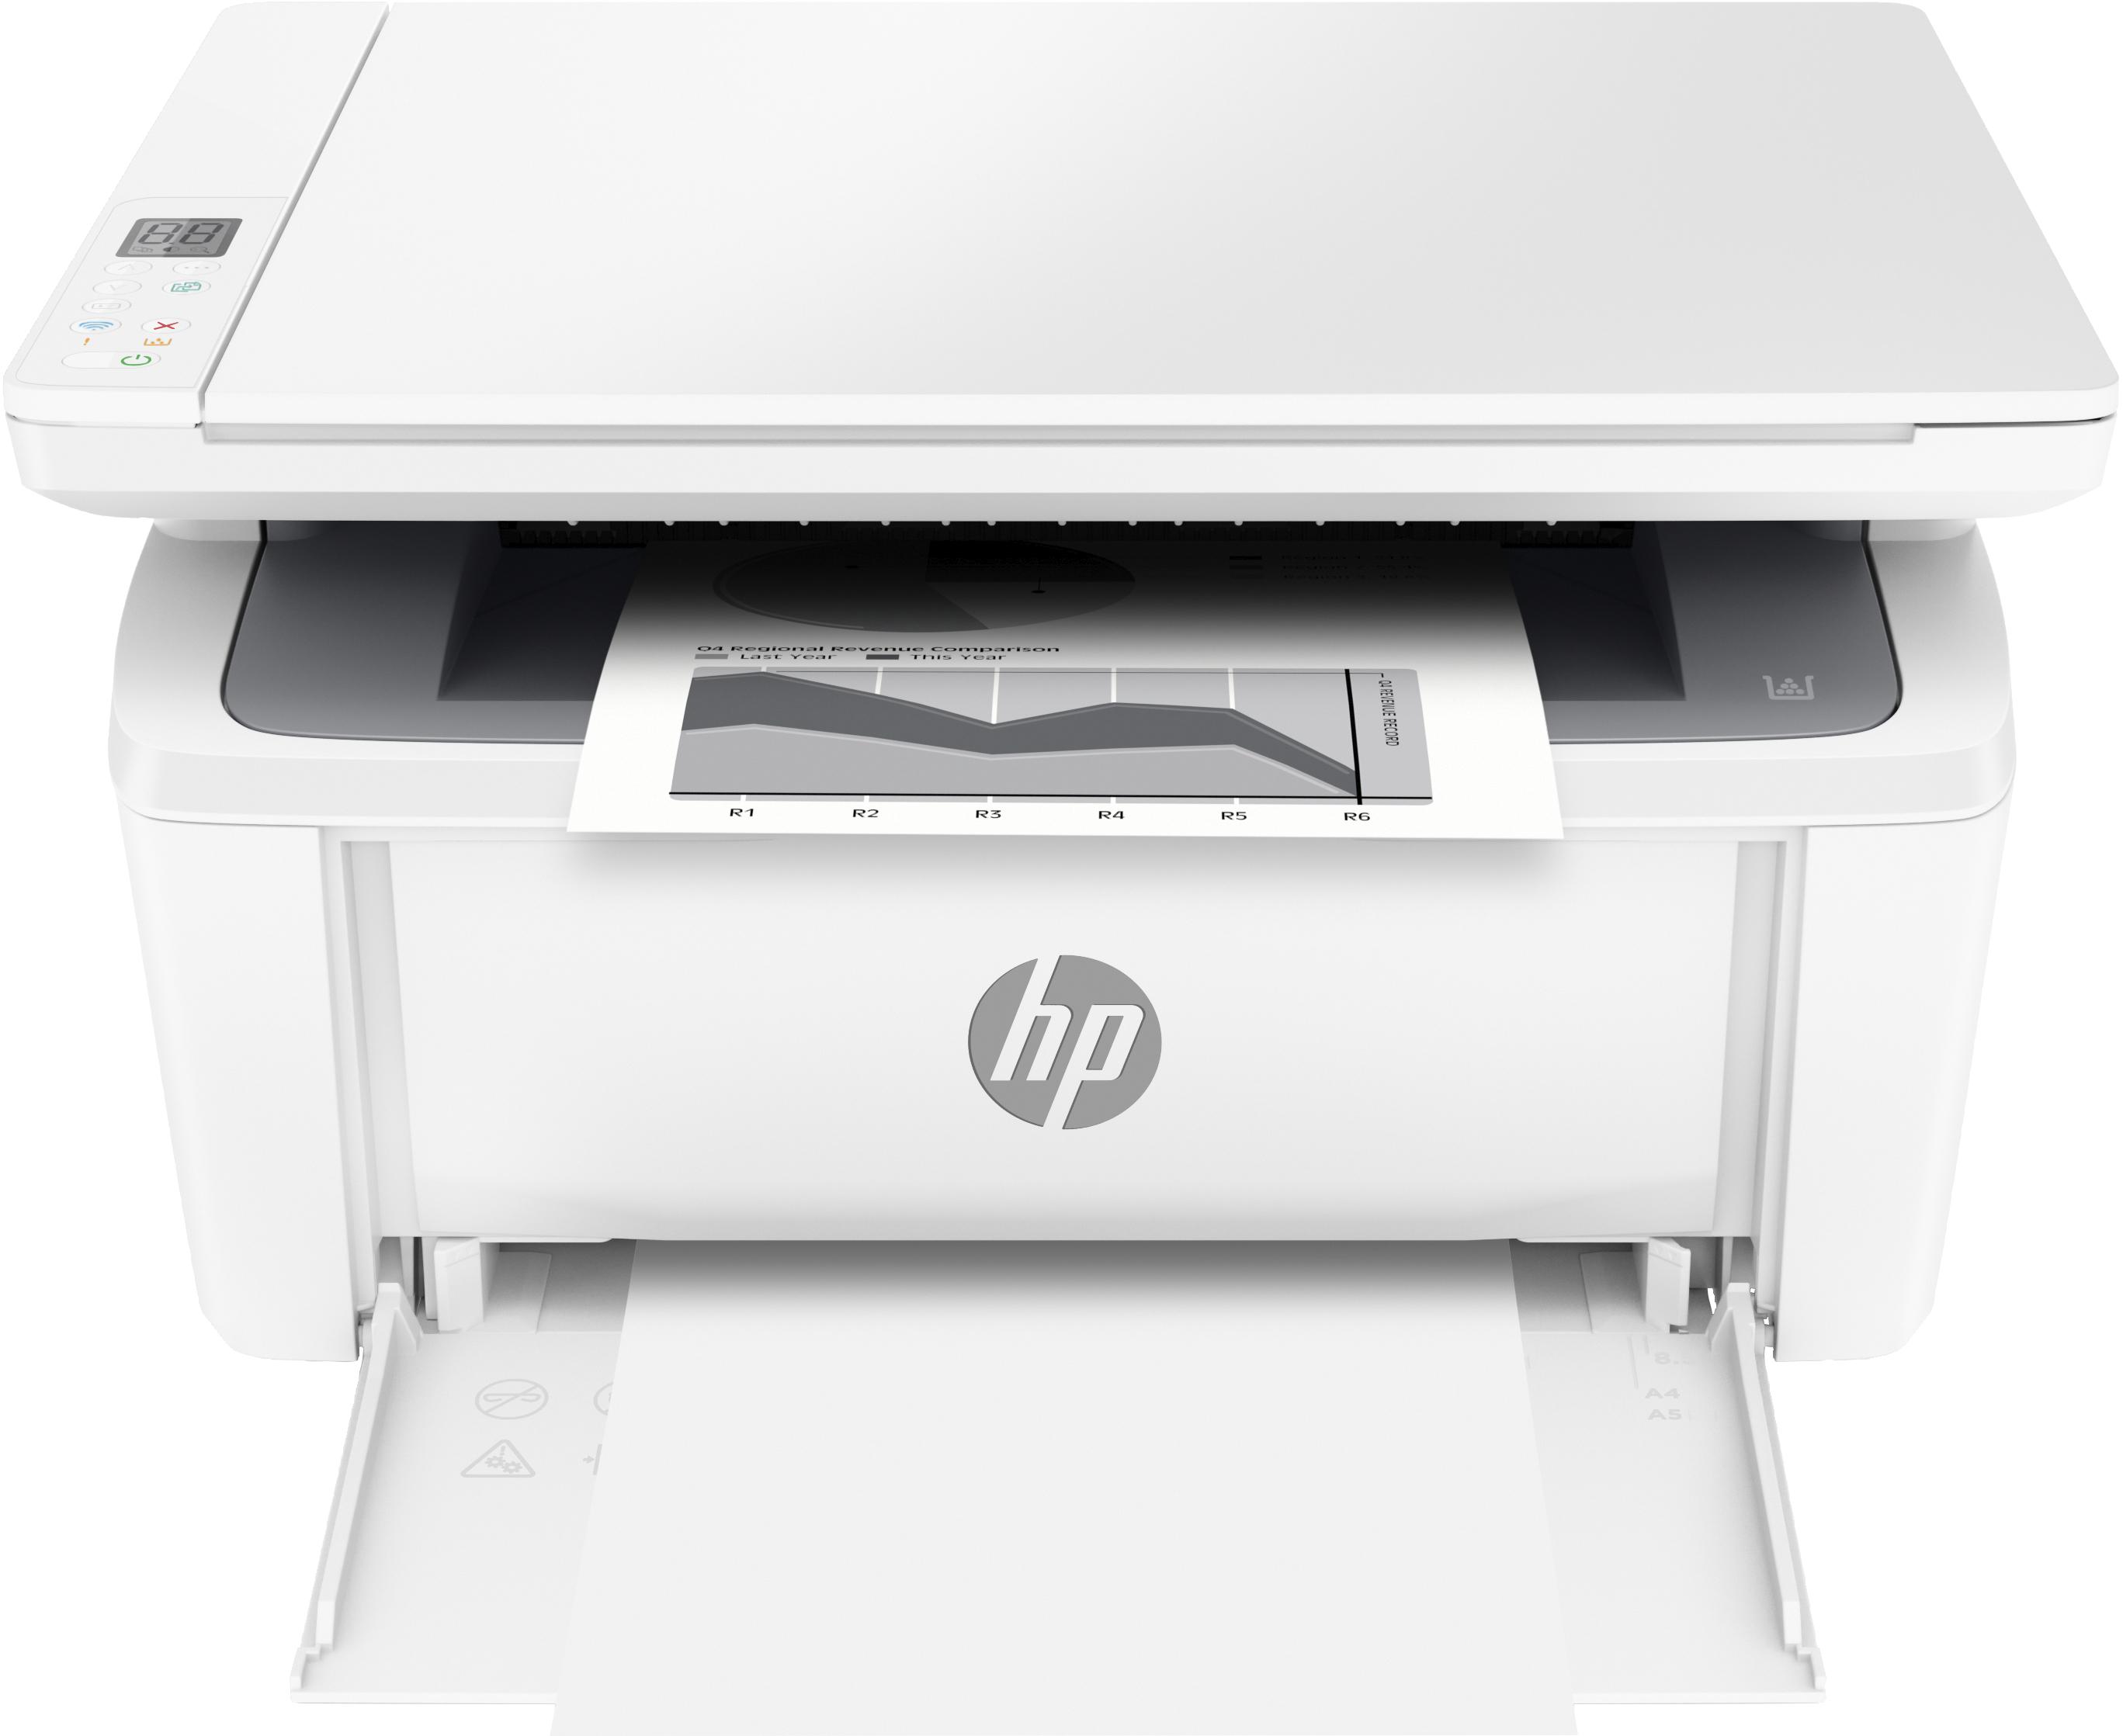 HP - Impressora Jato de Tinta HP Multifunções Laser Laserjet MFP M140W, A4, Wi-Fi